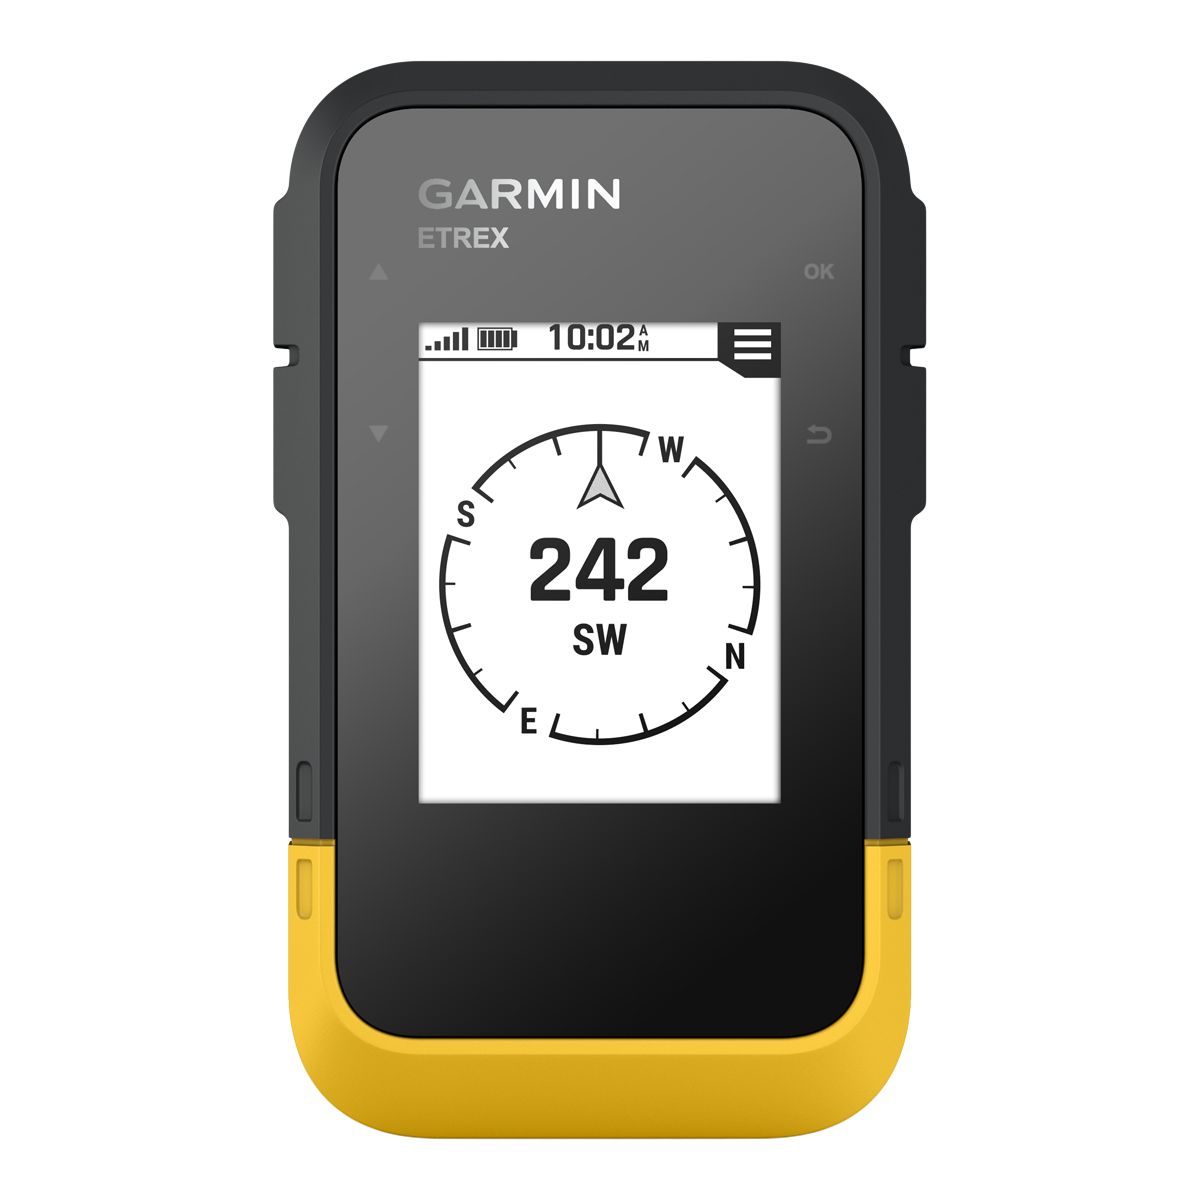 Image of Garmin Etrex SE GPS